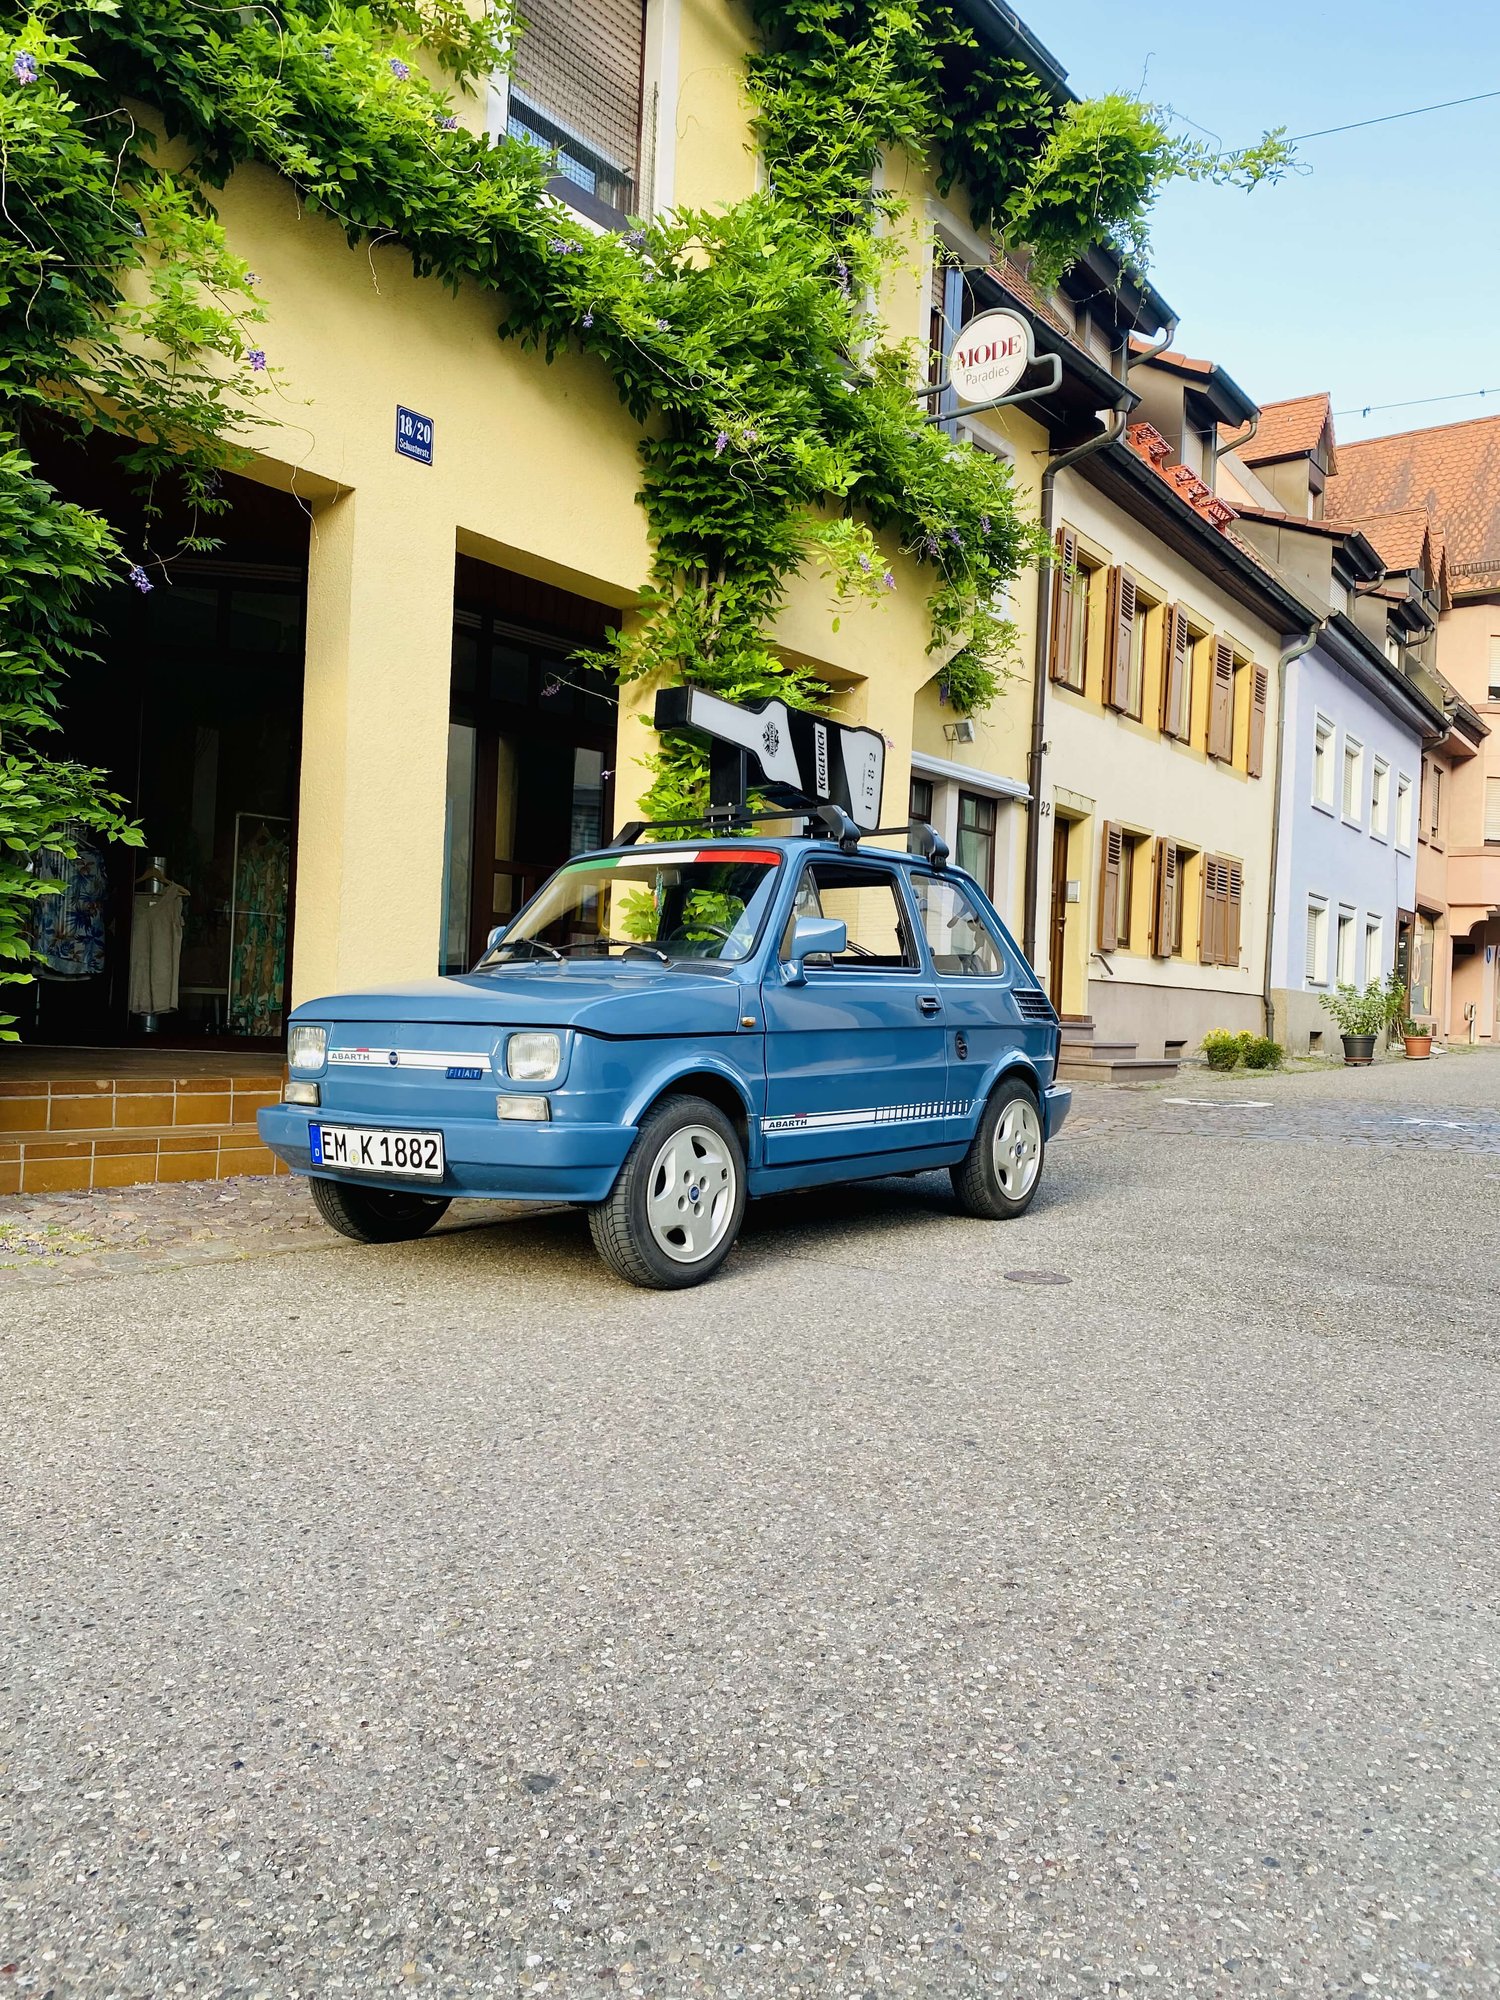 Dieses Bild zeigt eine charmante und rustikale blaue Fiat 126 bis, das Keglevich-Auto, geparkt auf der Straße neben einem malerischen Gebäude. Auf dem Dach des Autos ist ein charismatischer Dachträger befestigt, auf dem eine riesige Keglevich-Flasche platziert ist. In der Nähe des Autos fügt eine Pflanze in einem entzückenden Tontopf einen Hauch von Grün zur Szene hinzu, sie ruht auf einem rauen und unebenen Kopfsteinpflaster. Das Fahrzeug ein Gefühl von Abenteuer und Leichtigkeit aus. Insgesamt fängt das Bild die charmante Einfachheit einer malerischen Straßenszene ein und weckt ein Gefühl von Nostalgie, Sommer und Frieden.